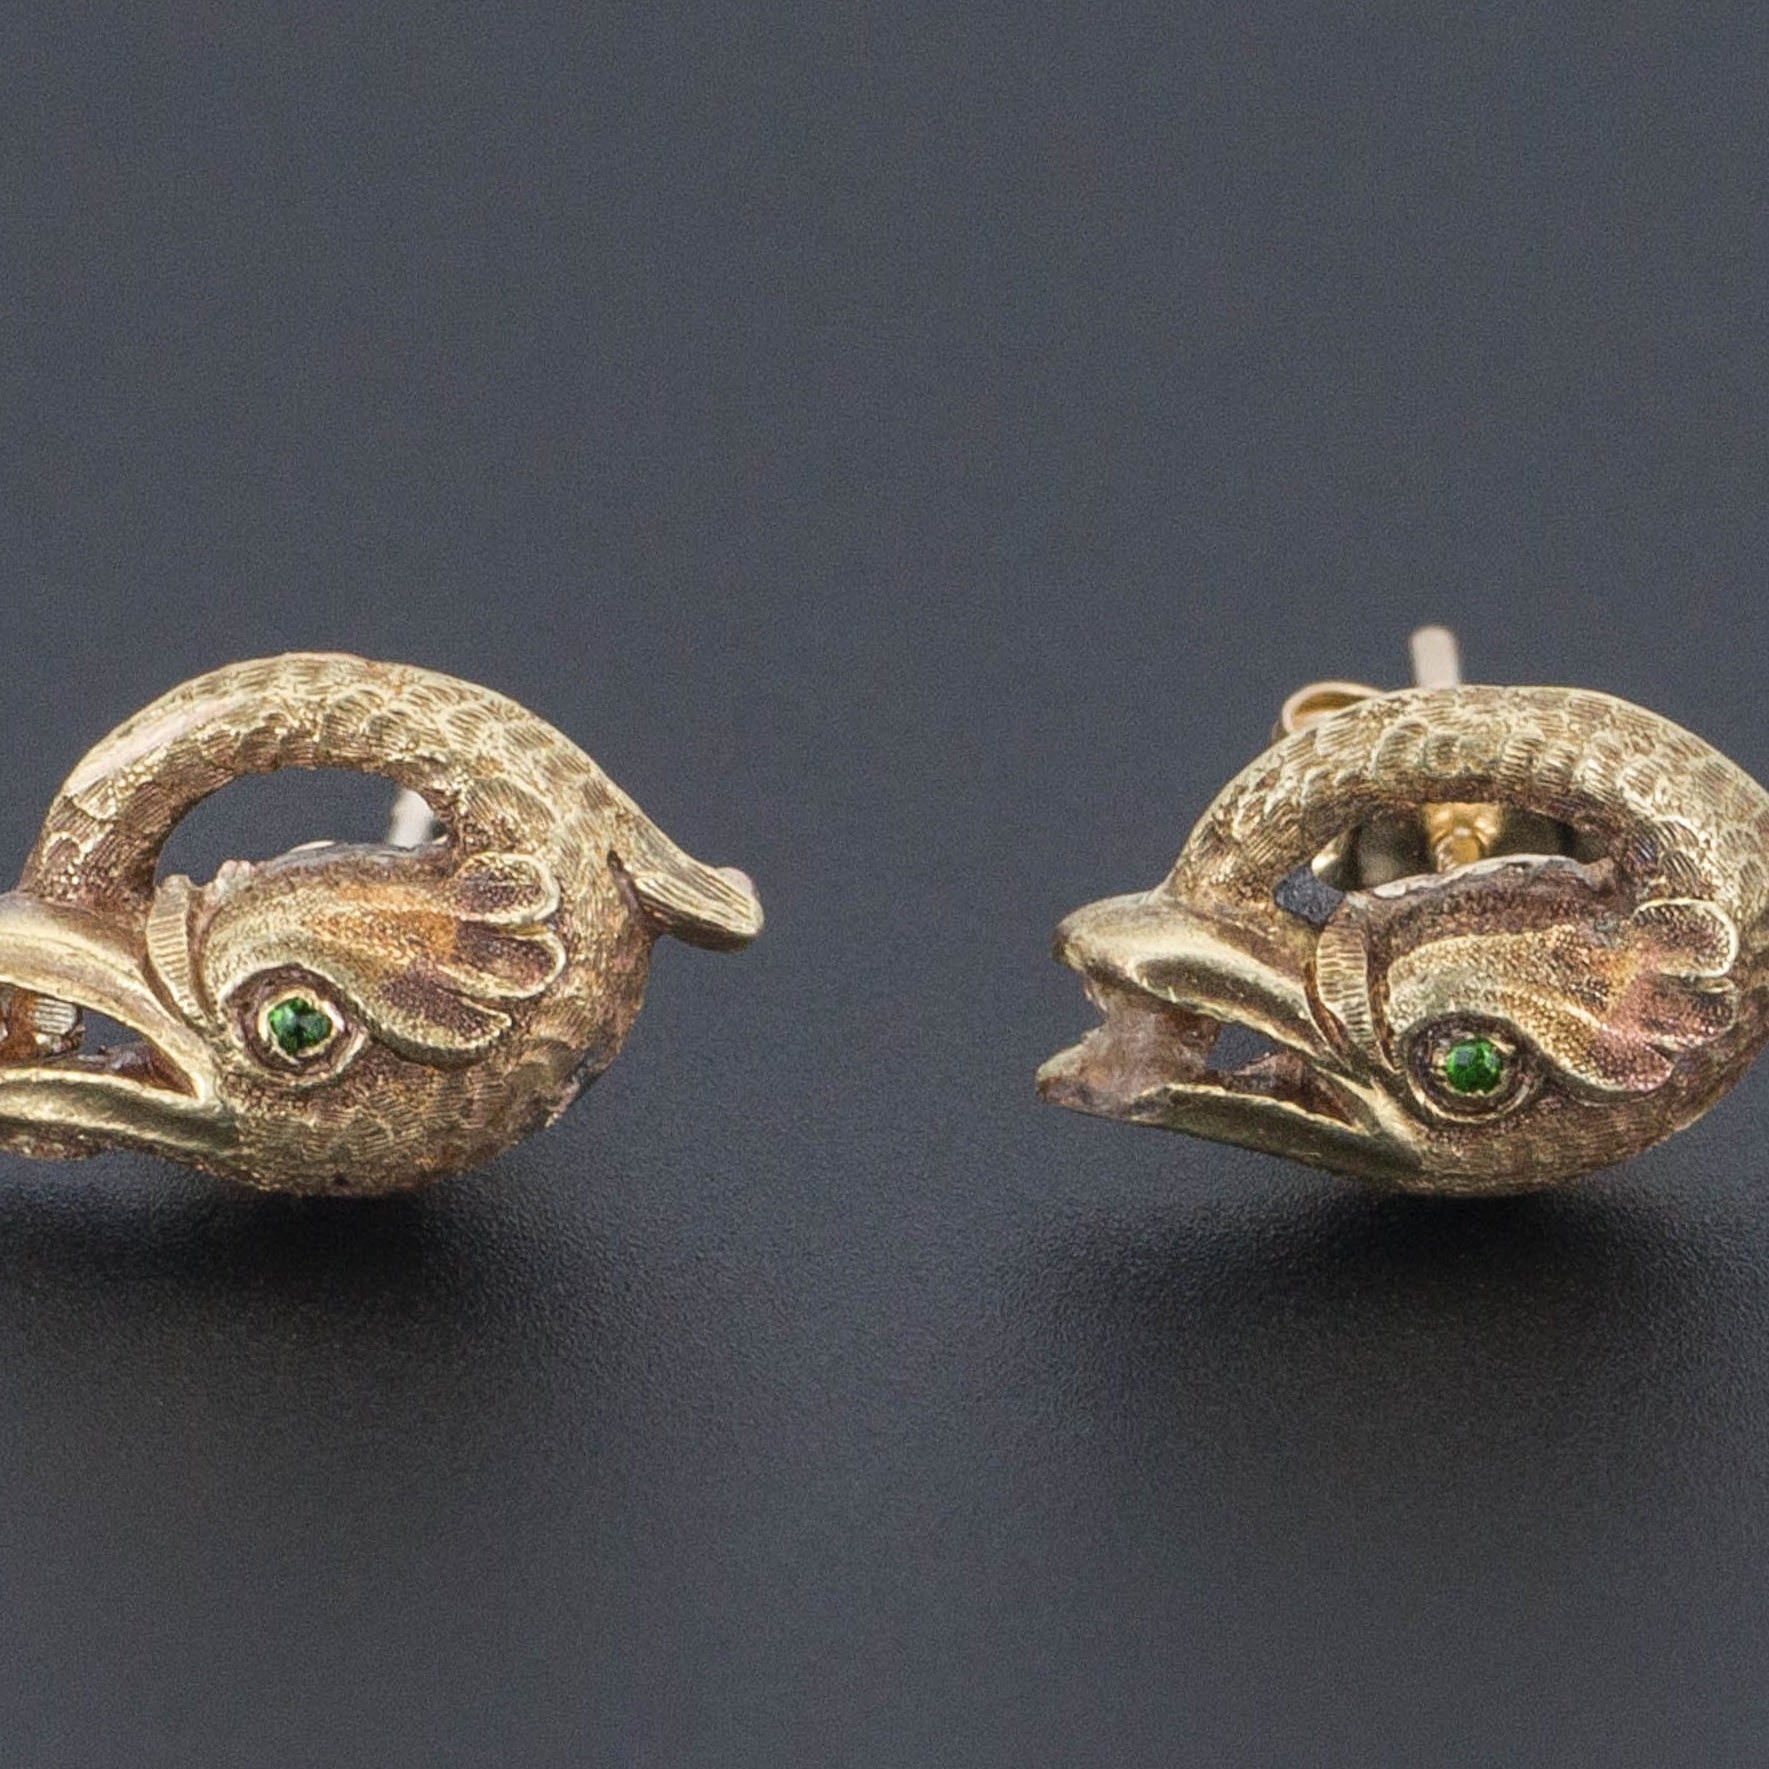 Basilisk Earrings | 14k Gold & Demantoid Garnet Earrings | Antique Conversion Earrings | Stud Earrings